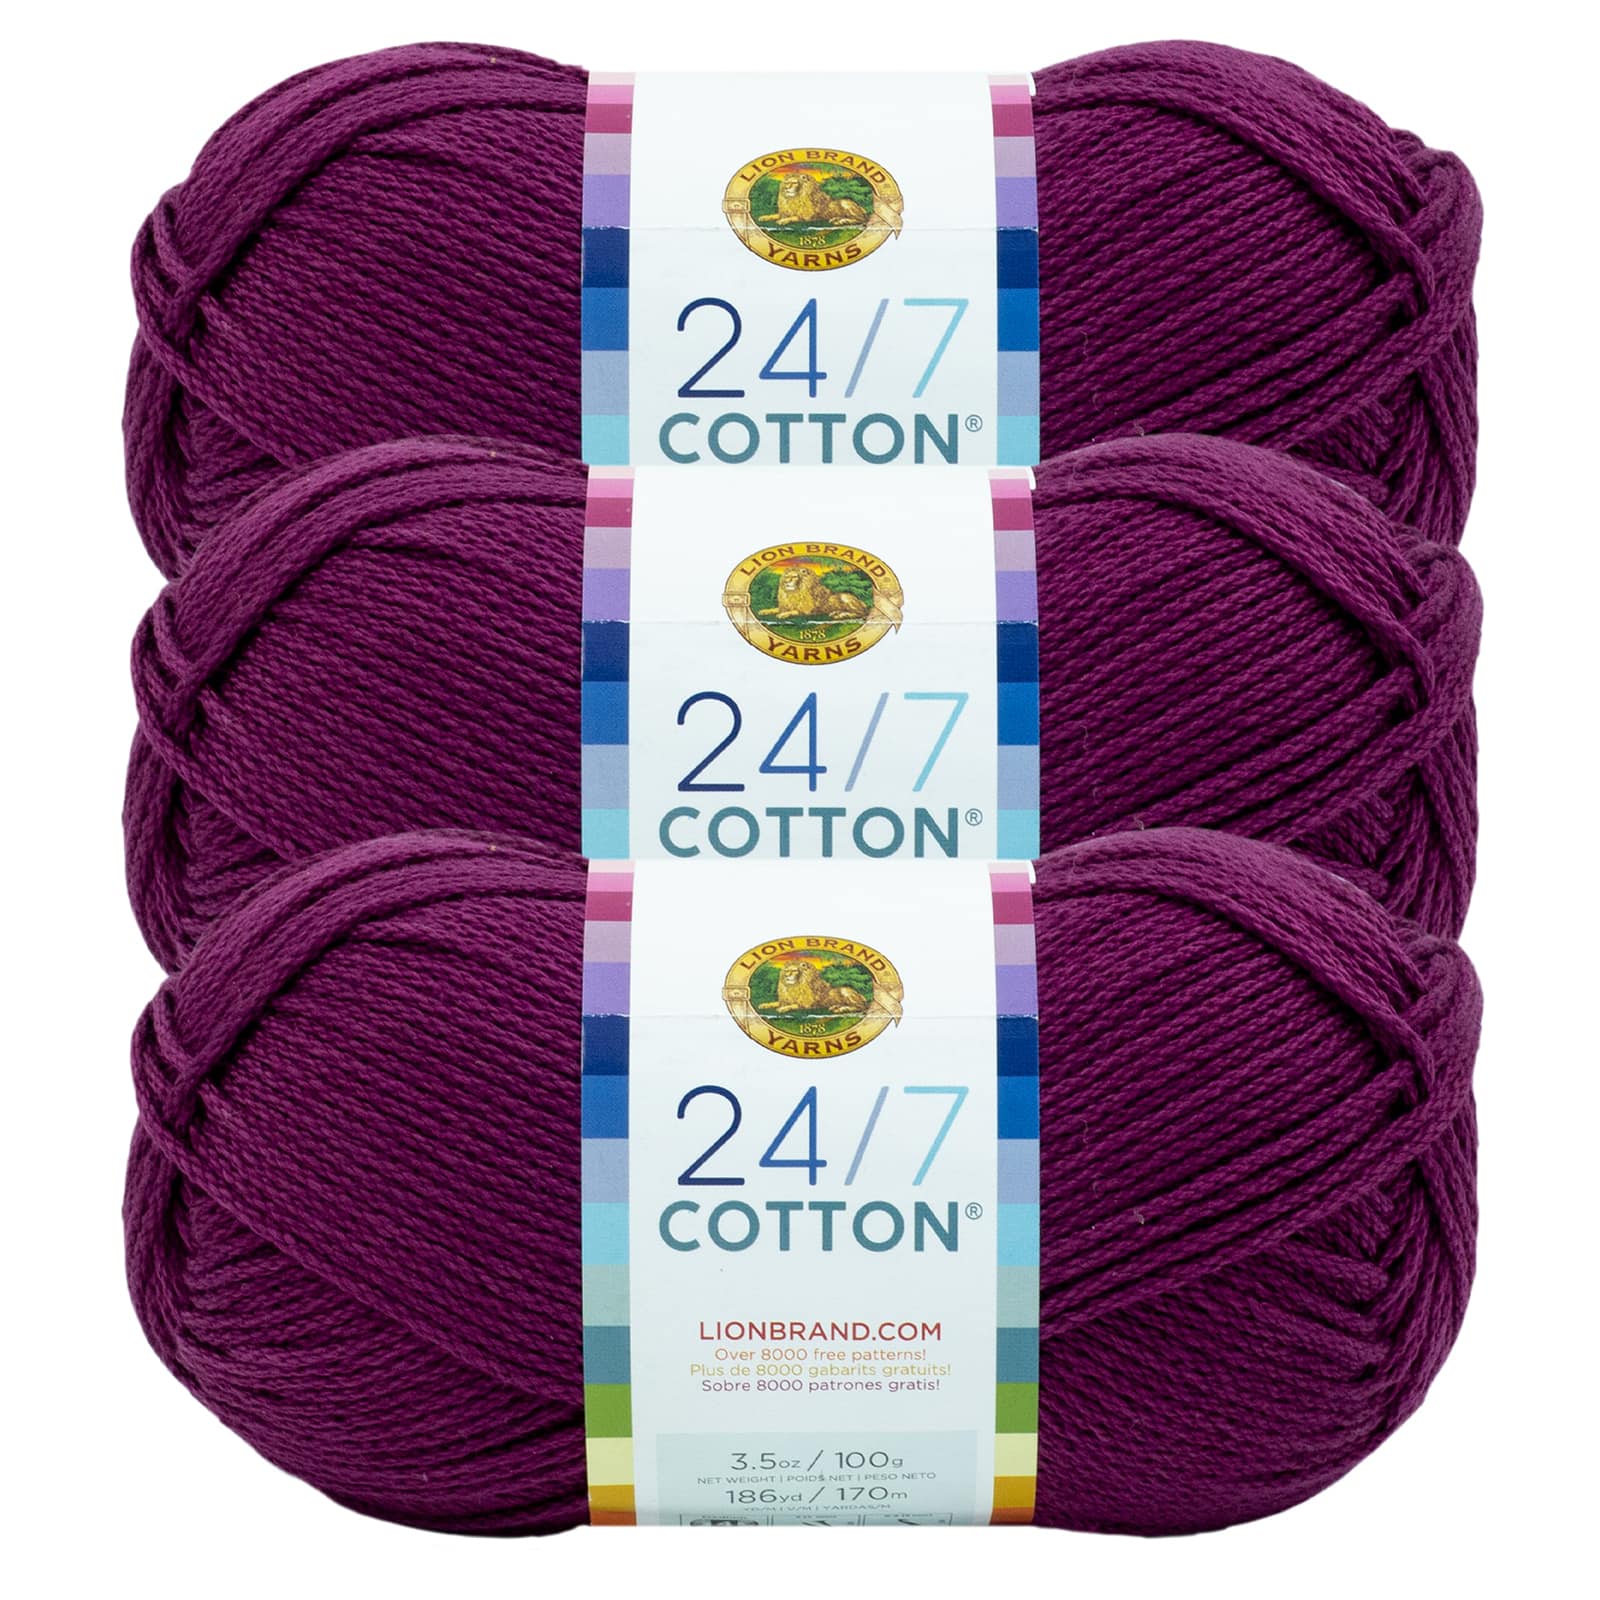 Lion Brand 24/7 Cotton Yarn-Silver 761-149 - GettyCrafts